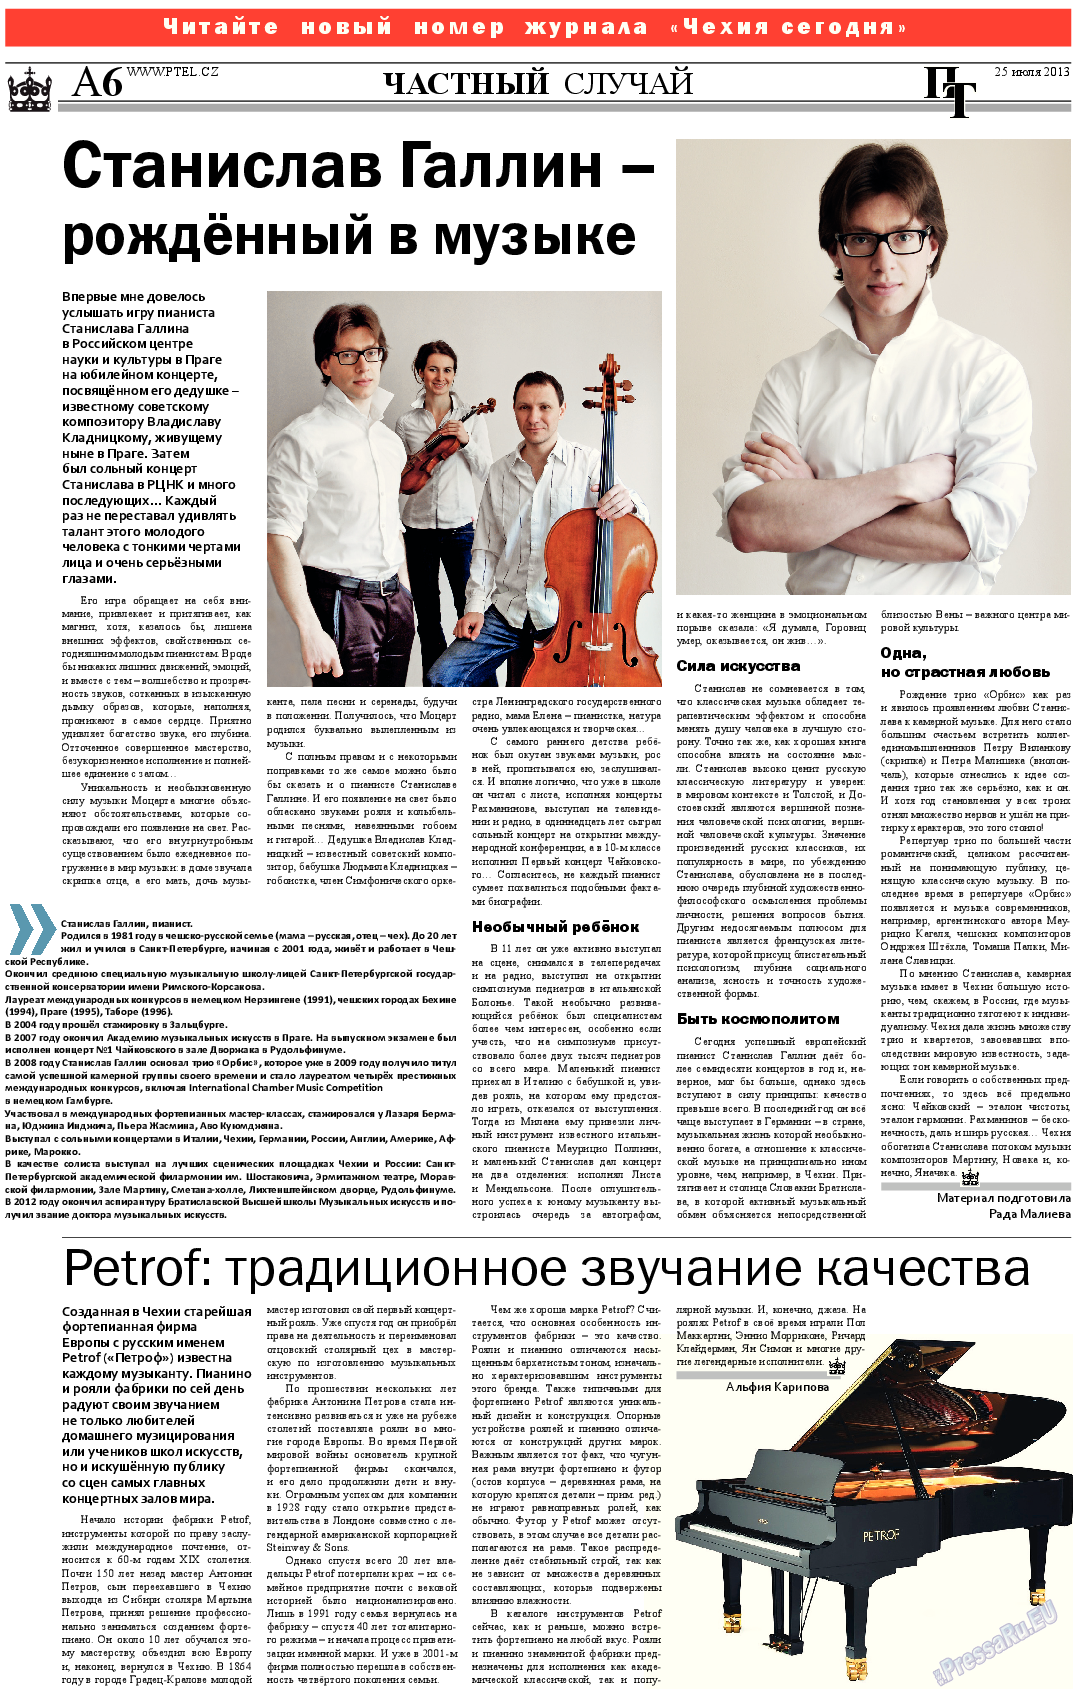 Пражский телеграф (газета). 2013 год, номер 29, стр. 6